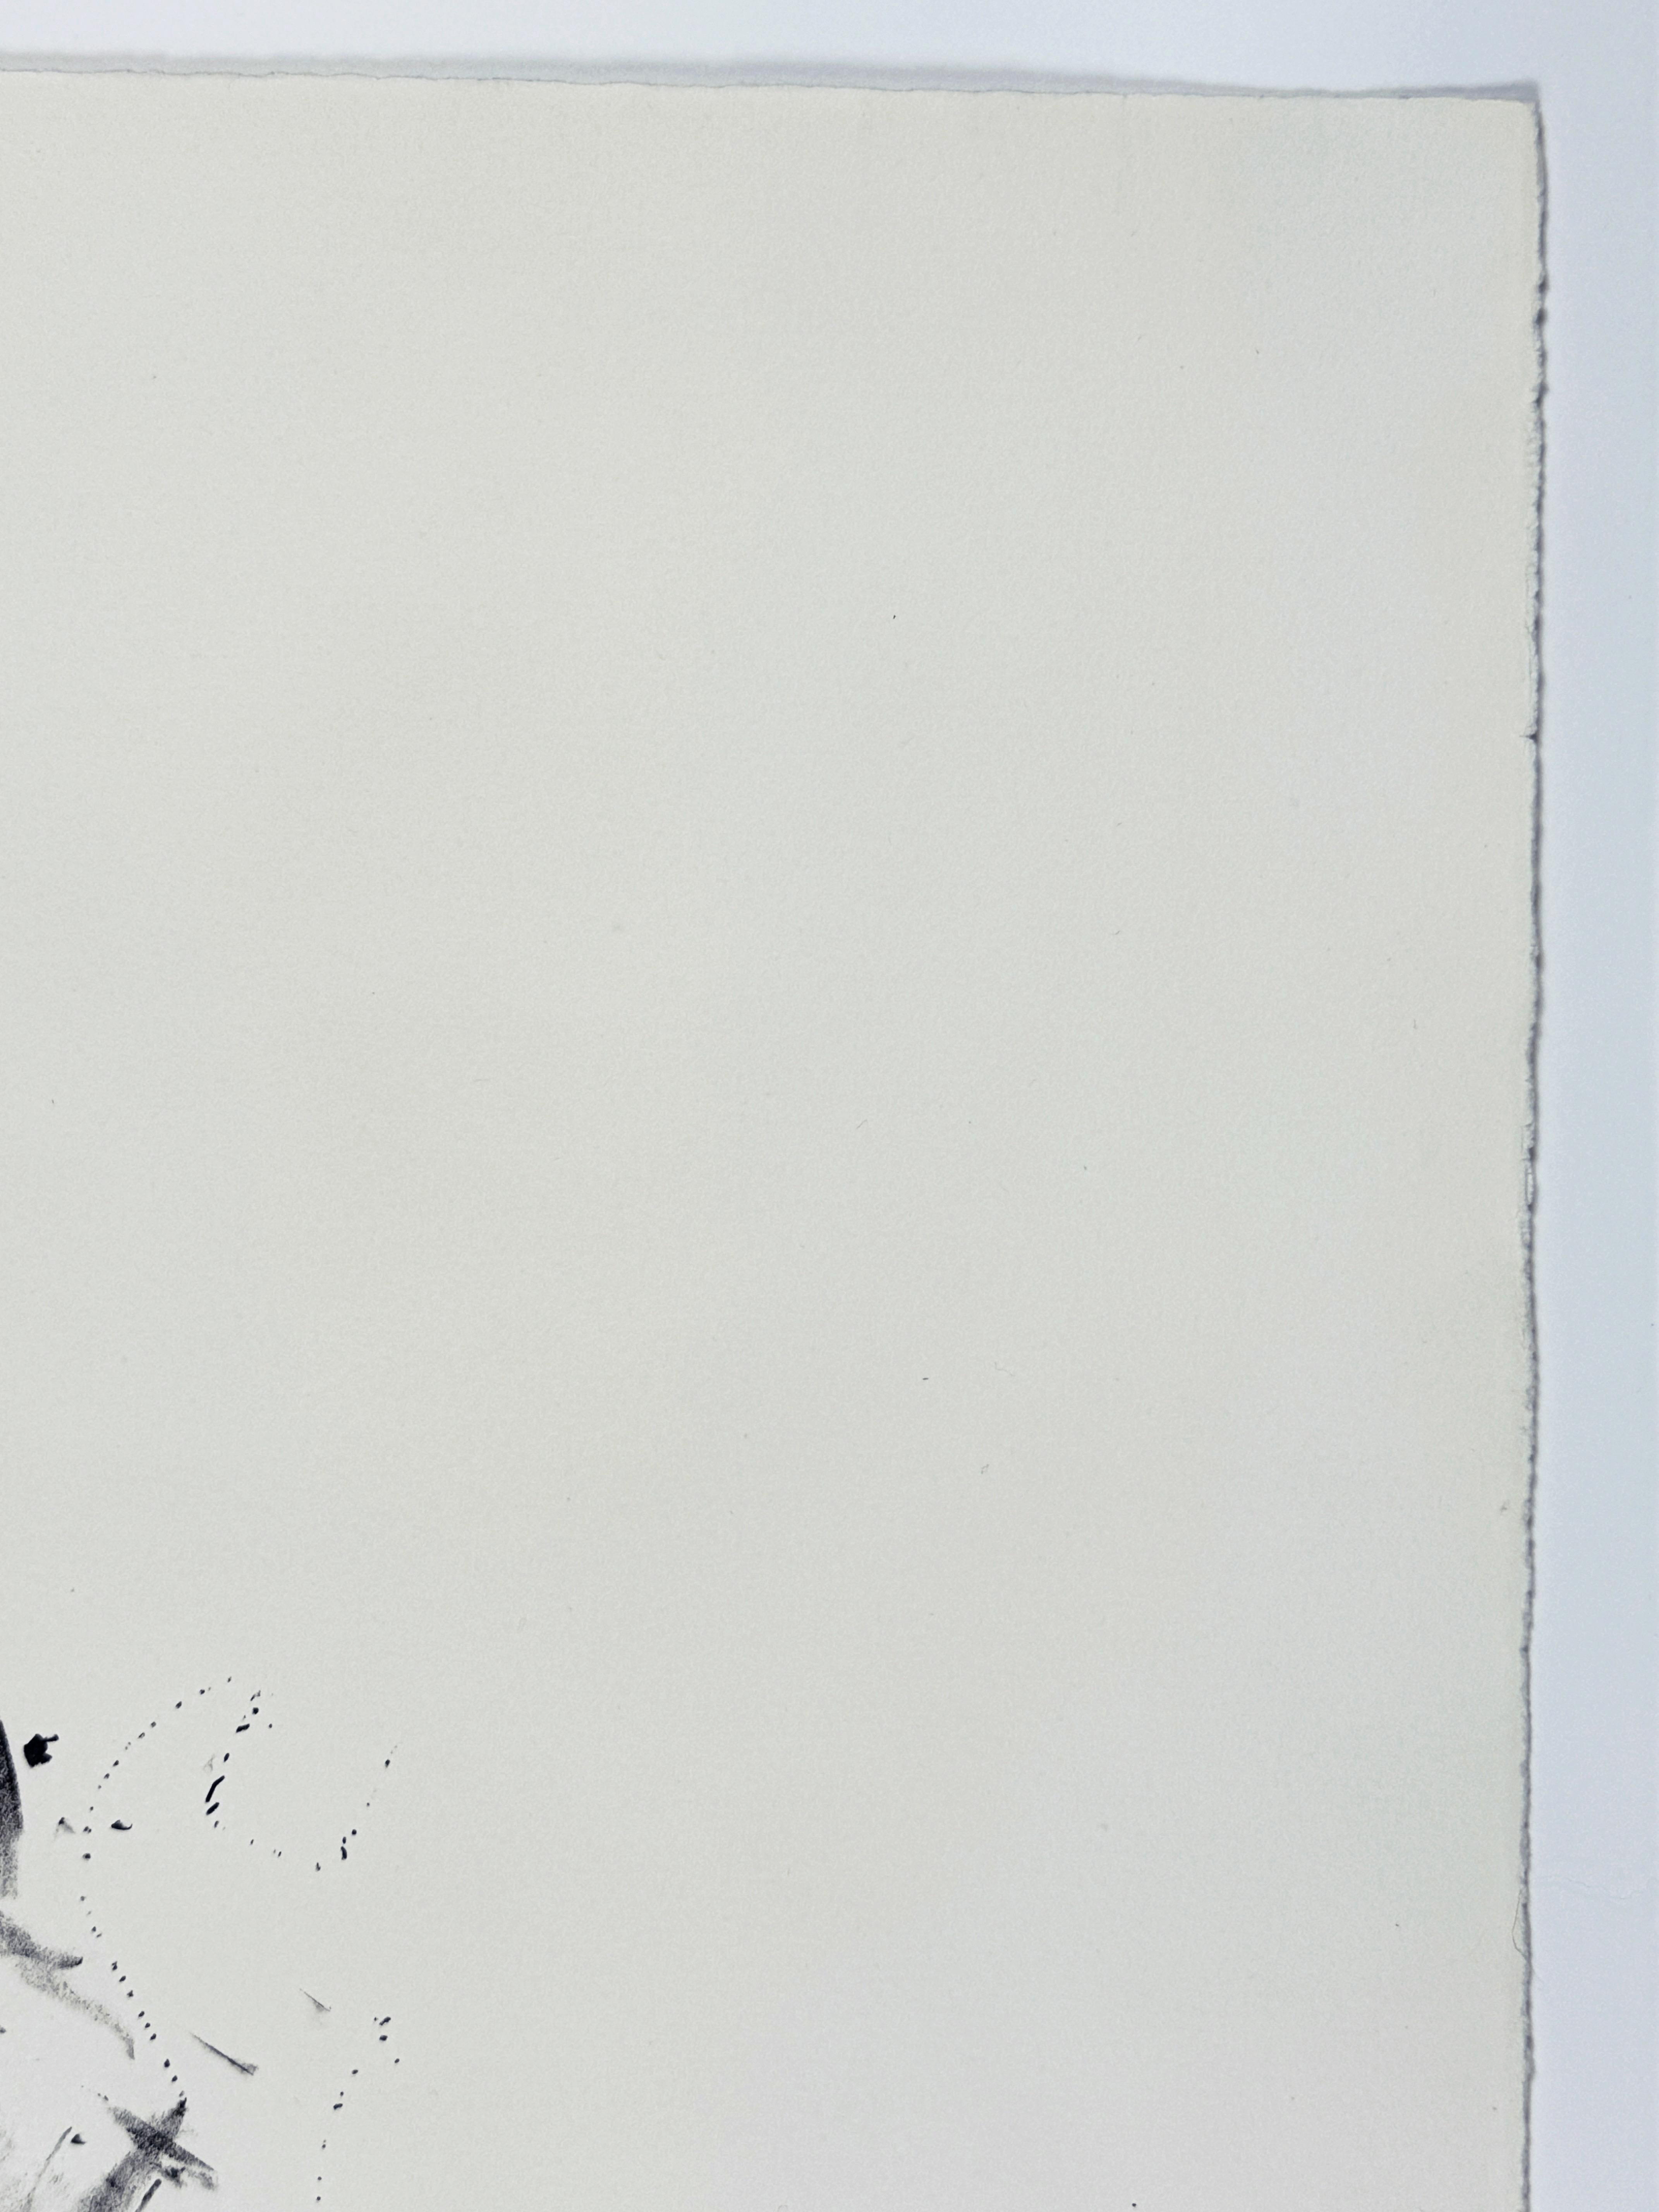 Iconographie classique des outils de Jim Dine tirée de Ten Winter Tools, 1973, cette lithographie en noir et blanc représente une clé à molette esquissée dans ses grandes lignes, en détail, puis en silhouette avec une ligne pointillée à peine